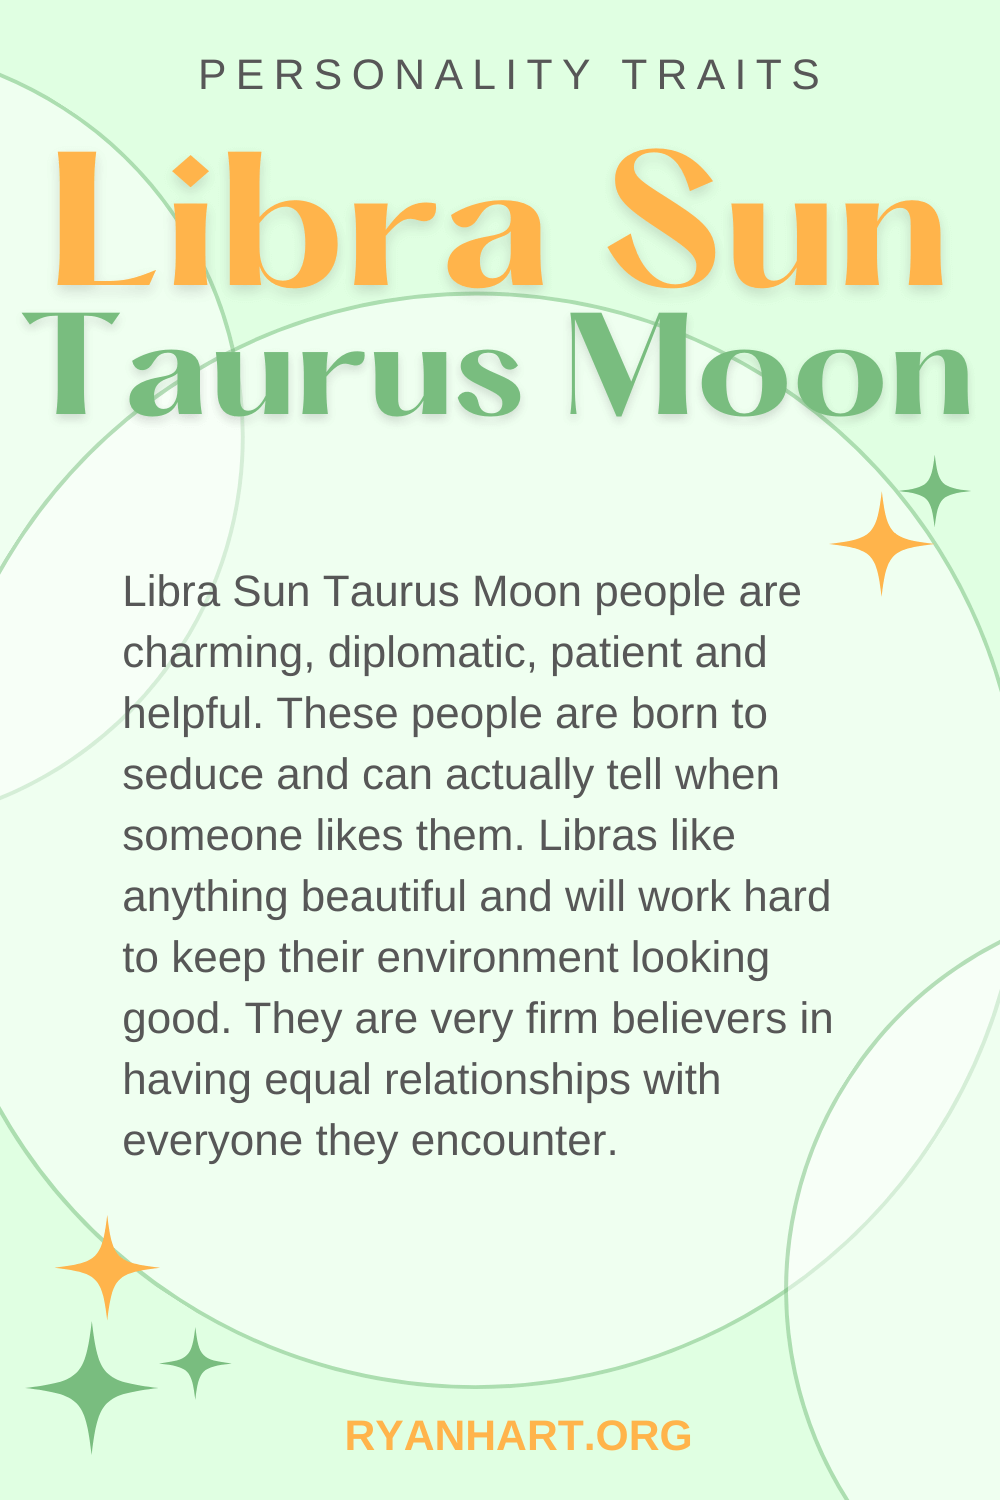  Libra Sun Taurus လ ပင်ကိုယ်စရိုက်လက္ခဏာများ